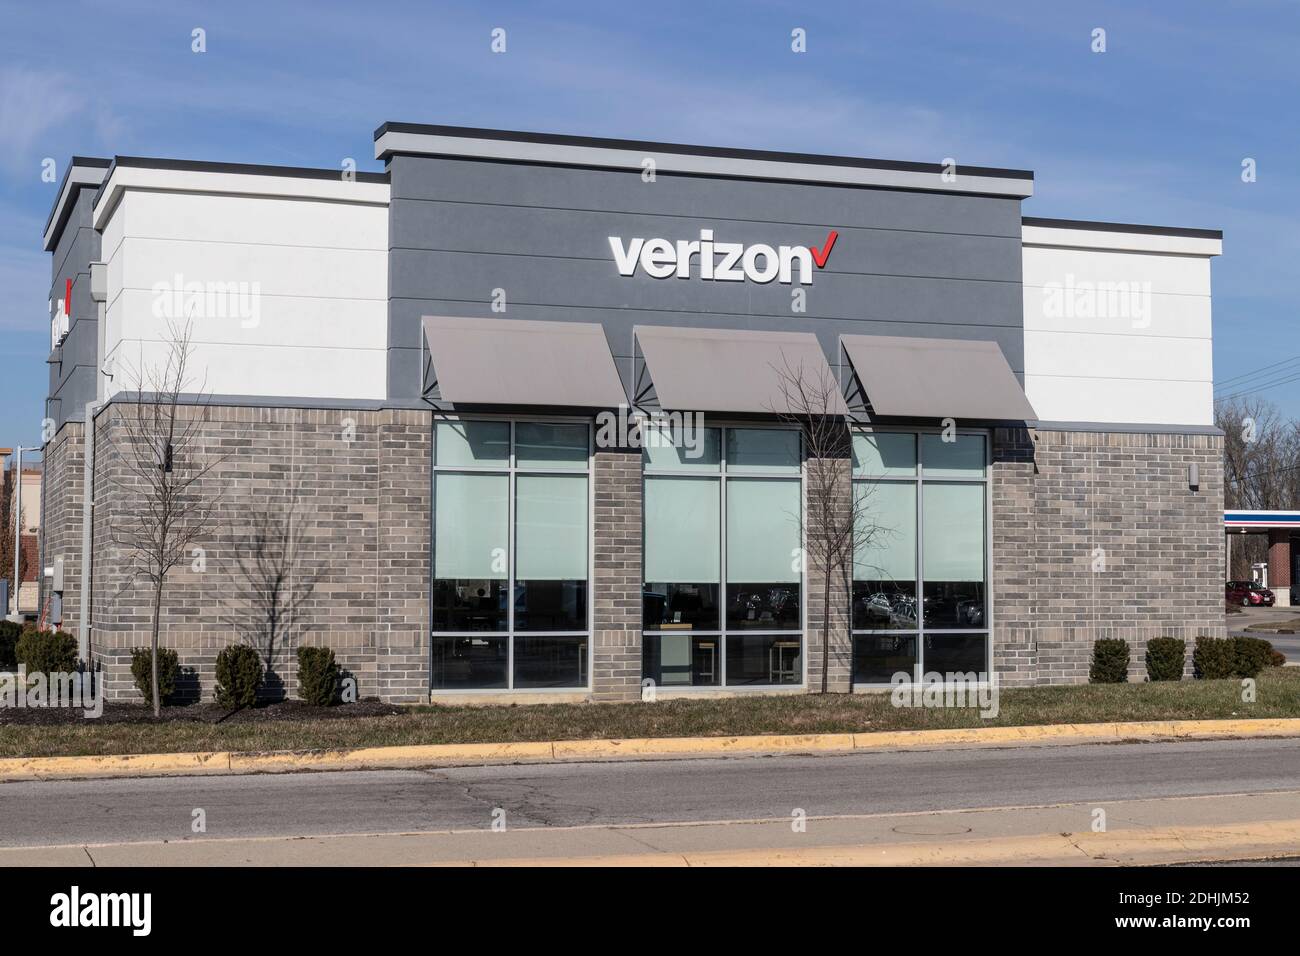 Greenfield - Circa Dezember 2020: Verizon Wireless Retail Location. Verizon bietet drahtlose Glasfasertechnik mit hoher Kapazität und 5G-Kommunikation. Stockfoto